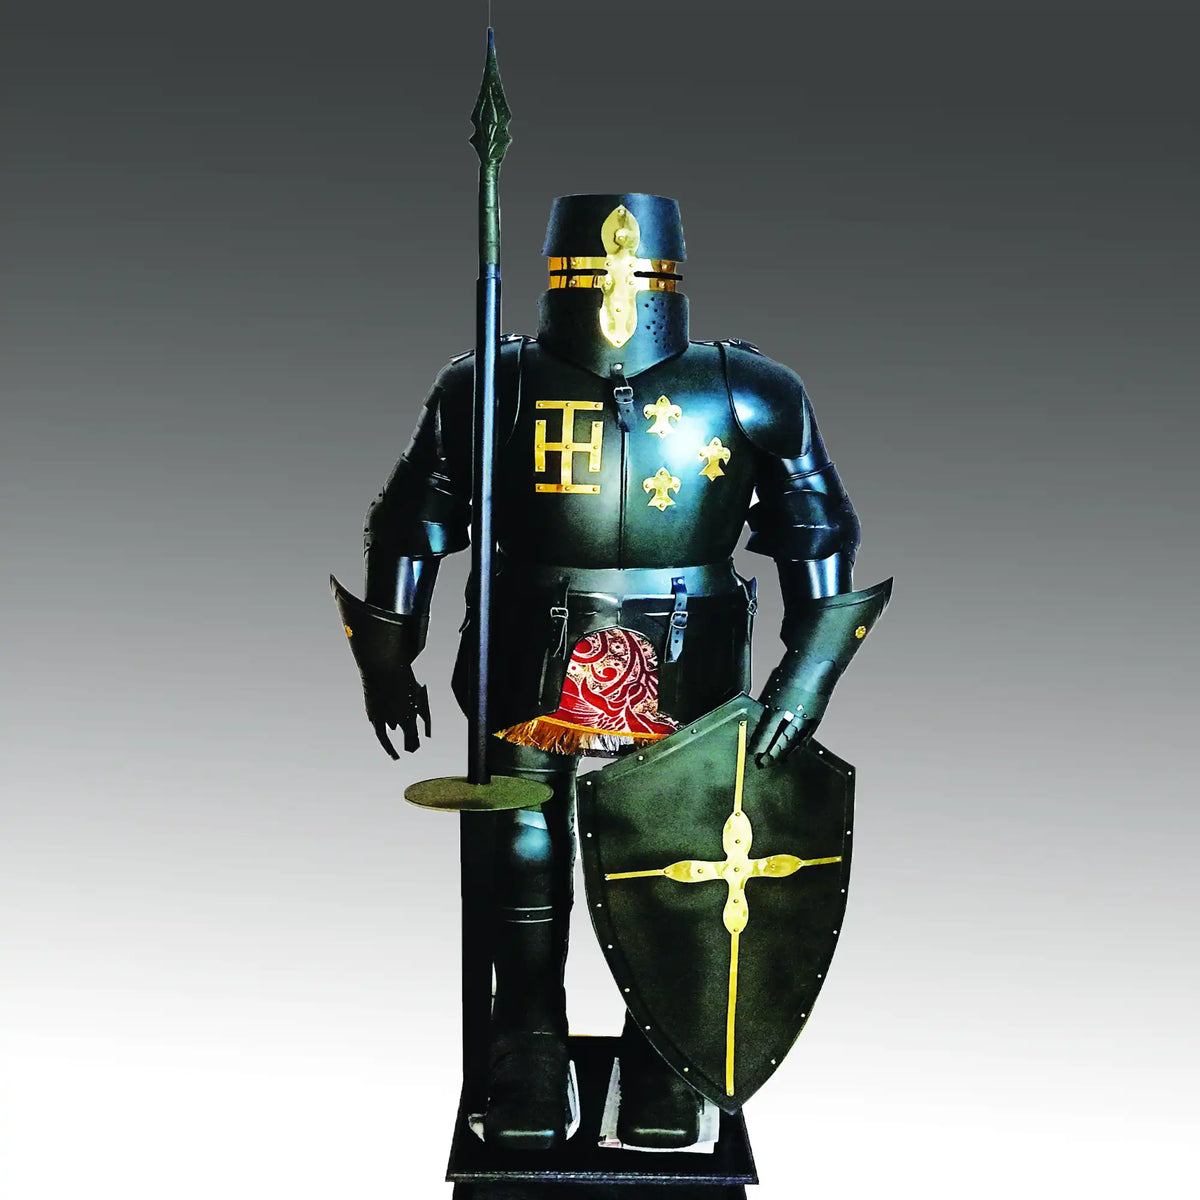 Medieval Knight Crusader Templar Full Body Armor Costume